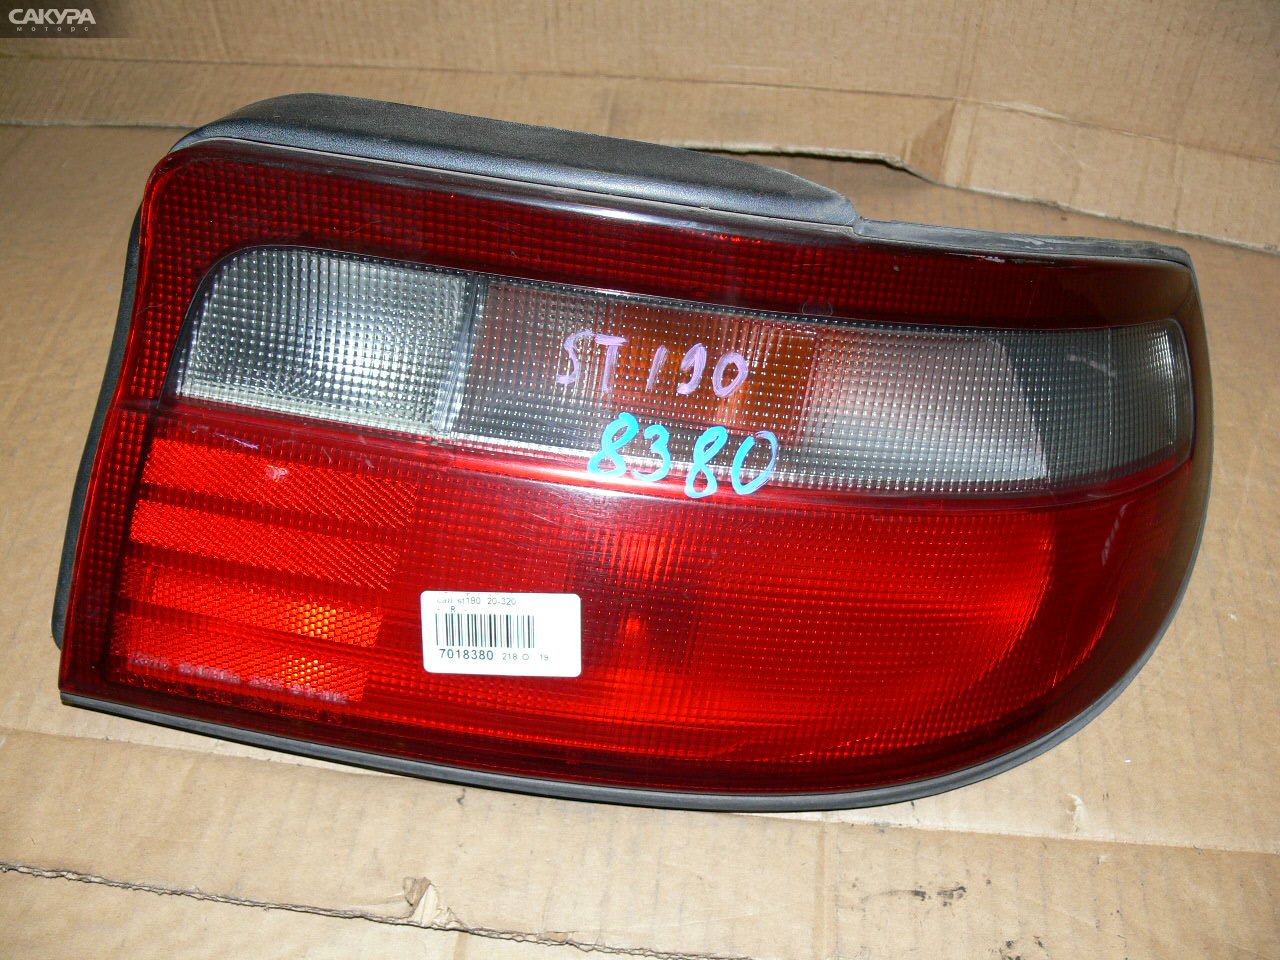 Фонарь стоп-сигнала правый Toyota Carina AT190 20-320: купить в Сакура Иркутск.